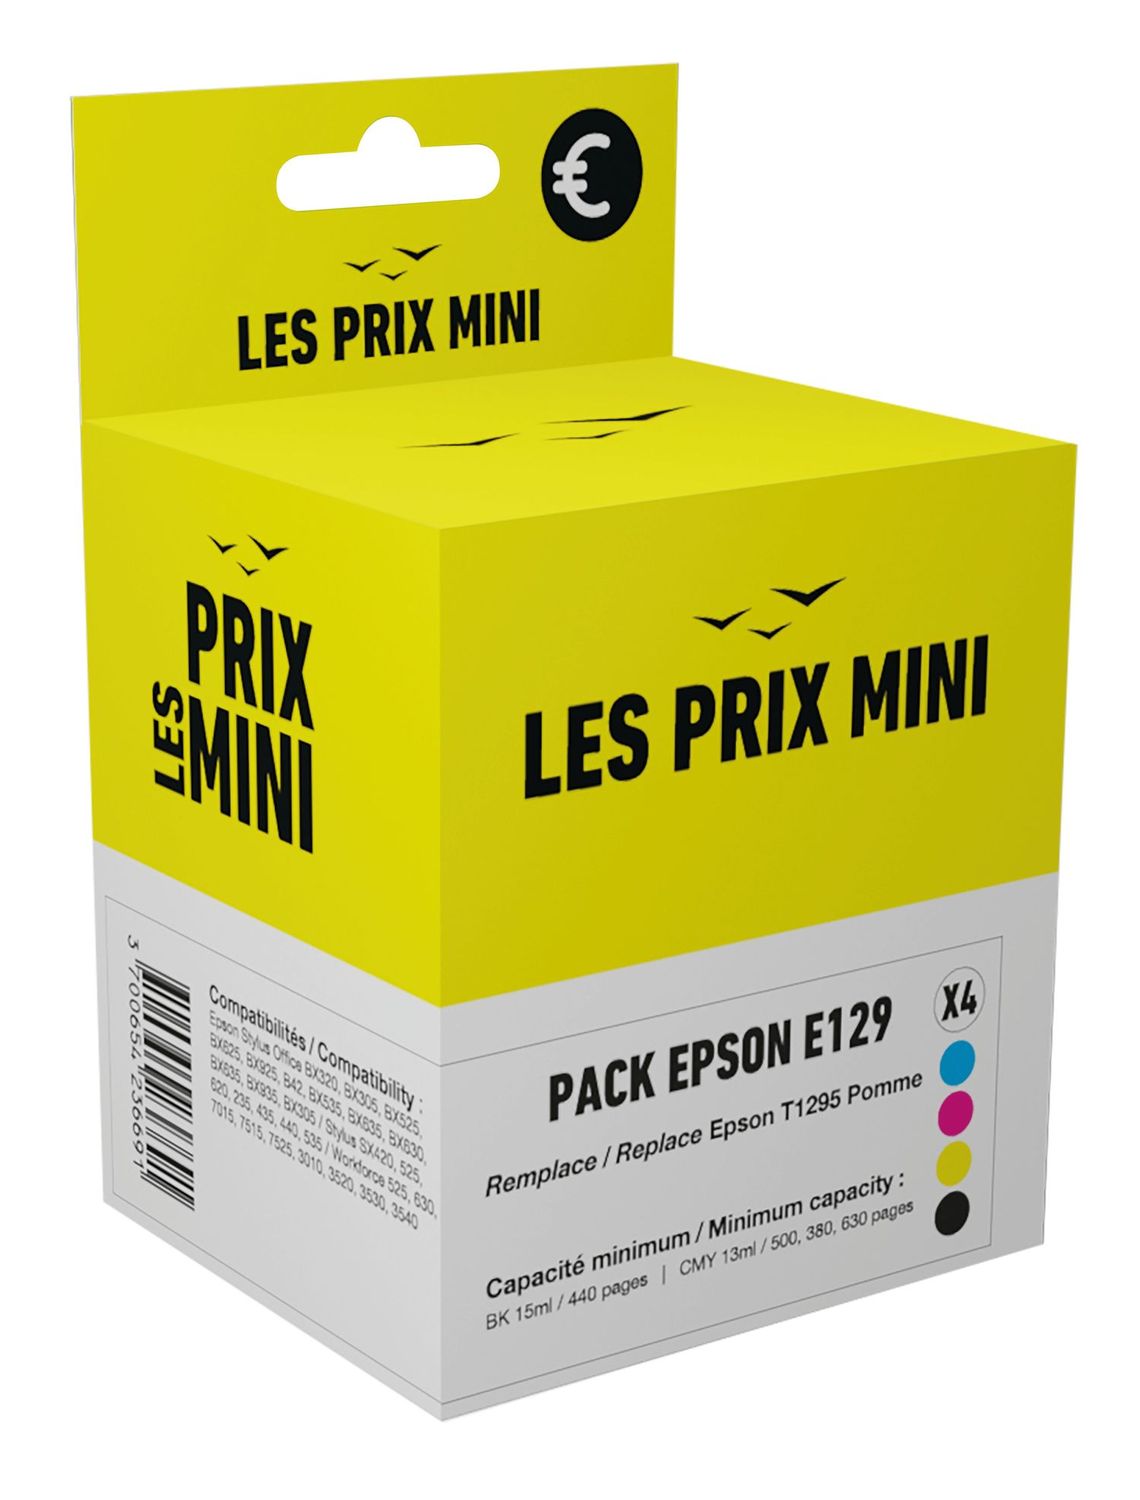 Cartouche compatible Epson T1295 Pomme - pack de 4 - noir, jaune, cyan,  magenta - prix mini Pas Cher